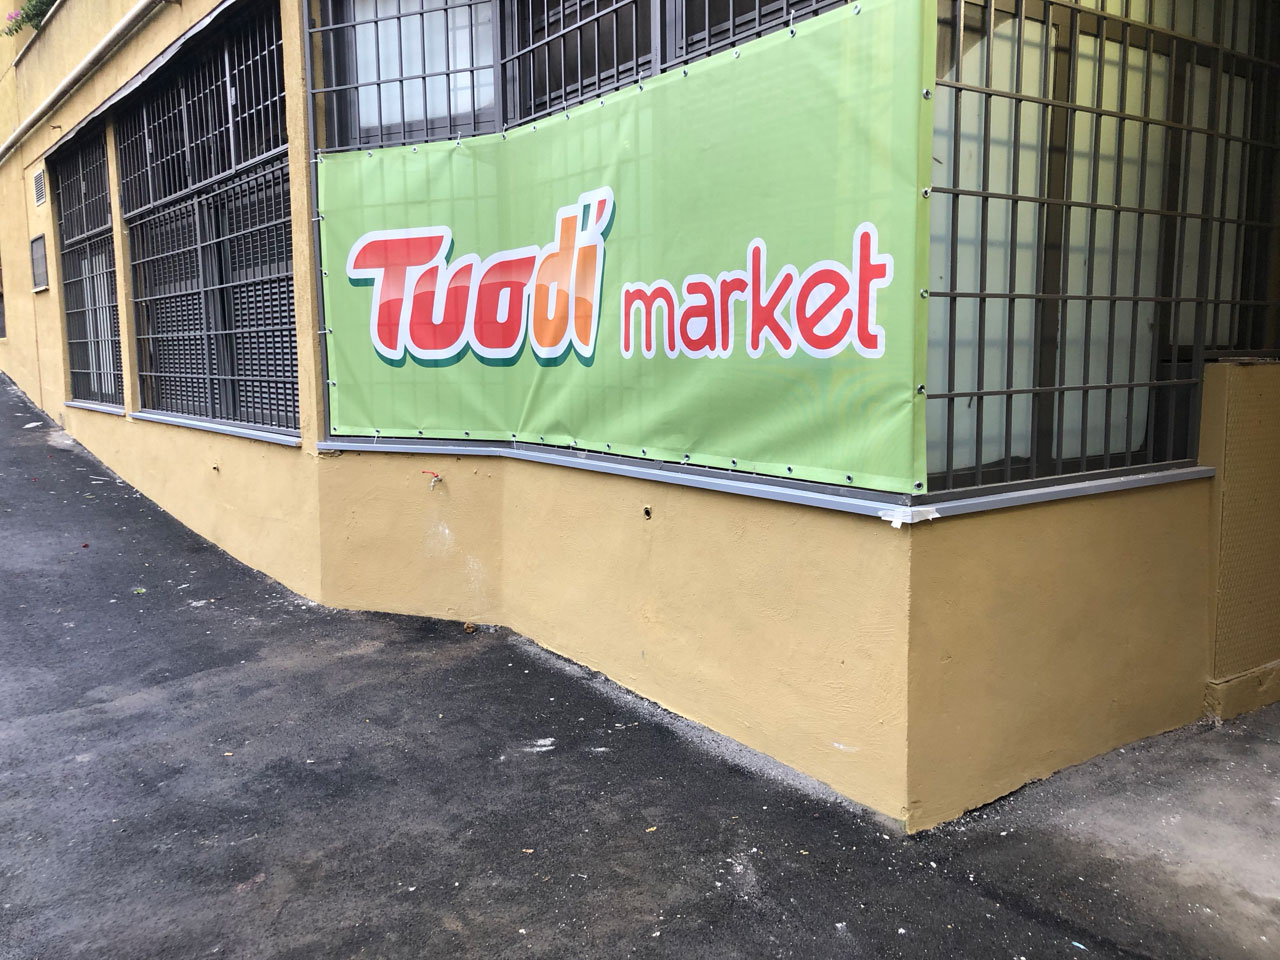 Tuodi Market Trionfale Apertura 6 dicembre 2018